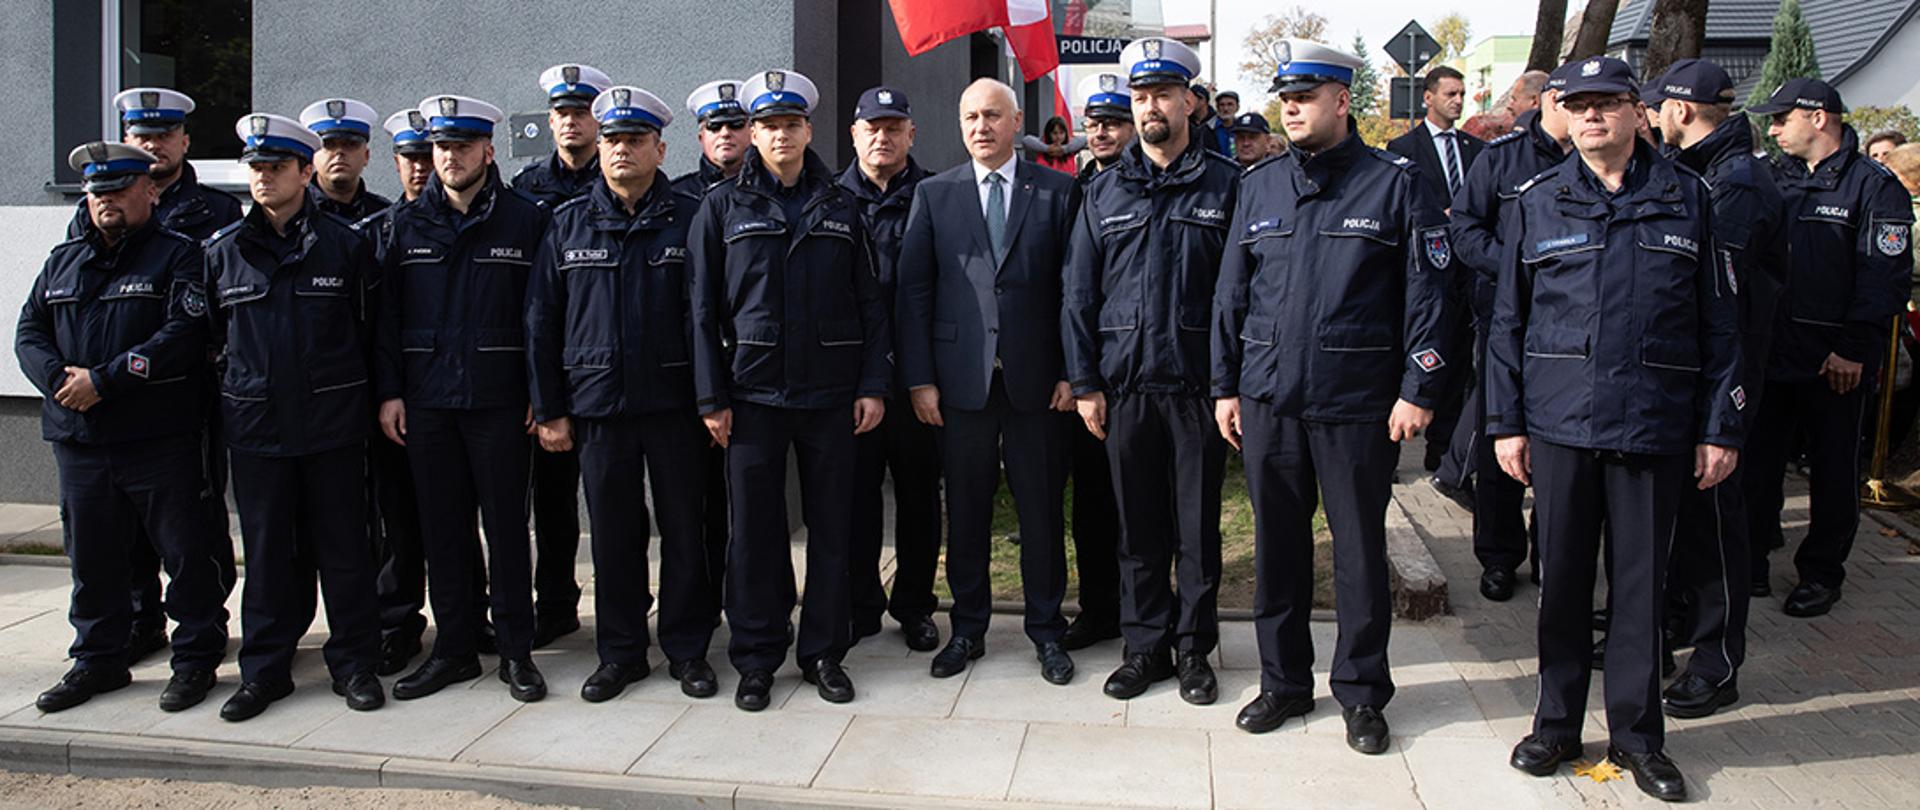 Uroczystość otwarcia posterunku Policji w Dobrej (woj. zachodniopomorskie)